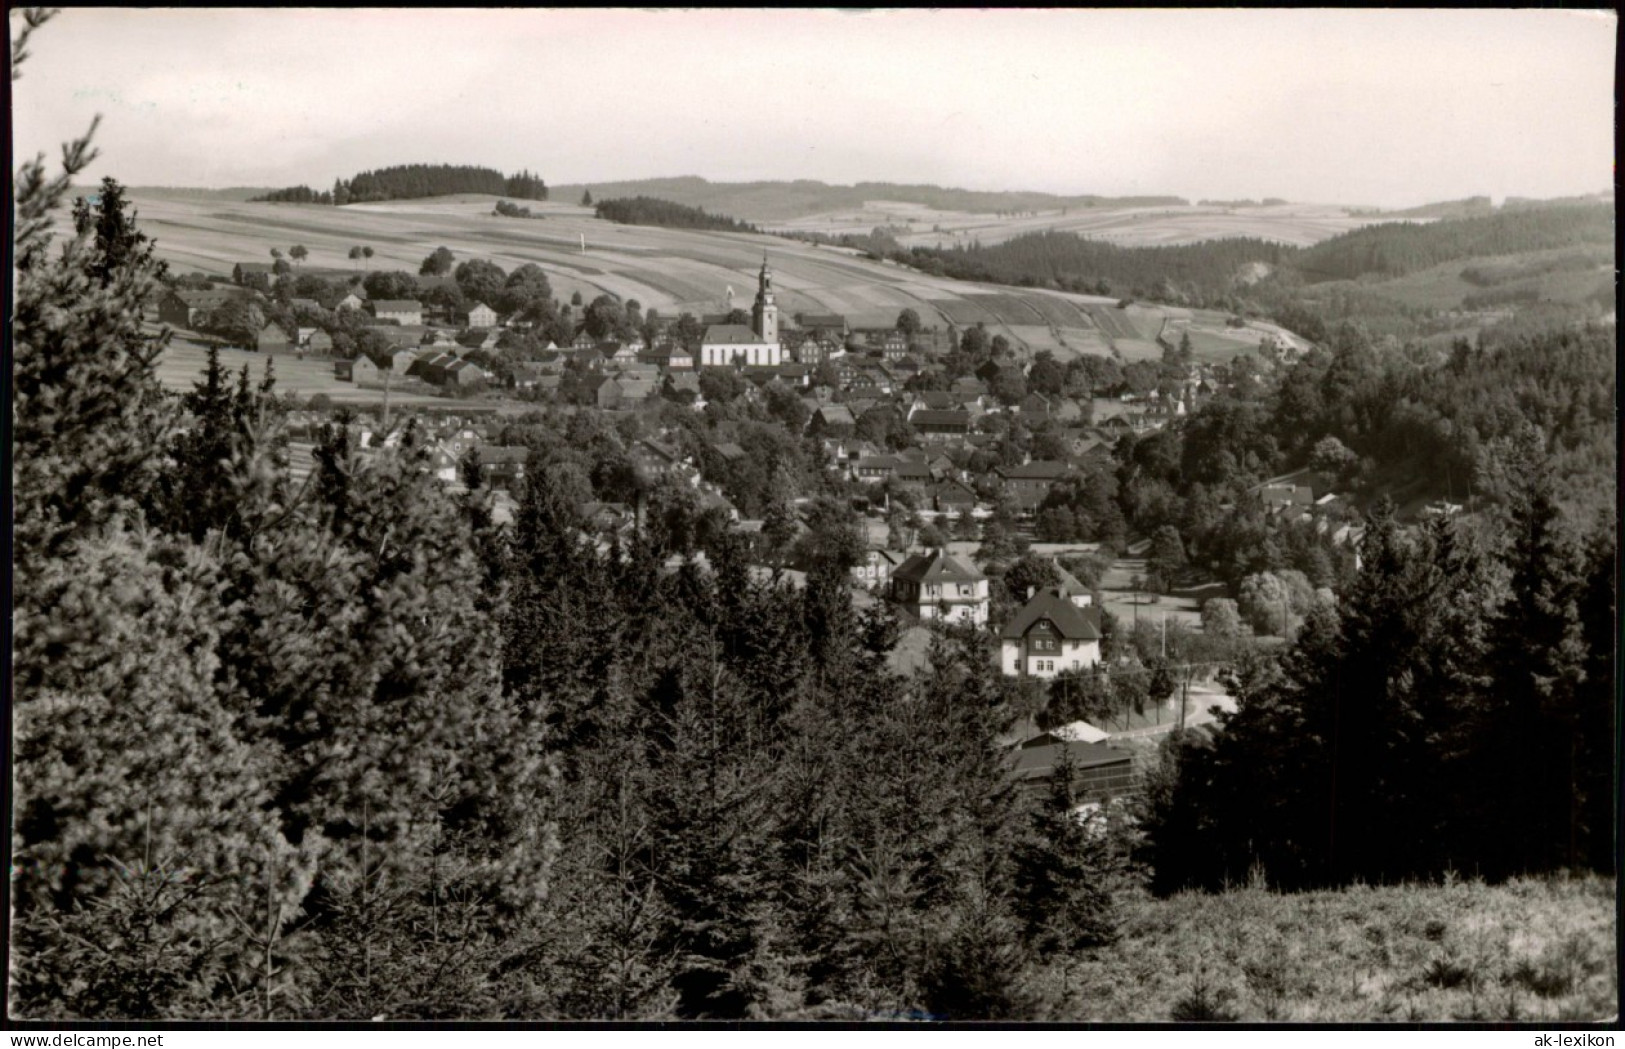 Ansichtskarte Wurzbach Panorama-Ansicht Totalansicht 1960 - Wurzbach